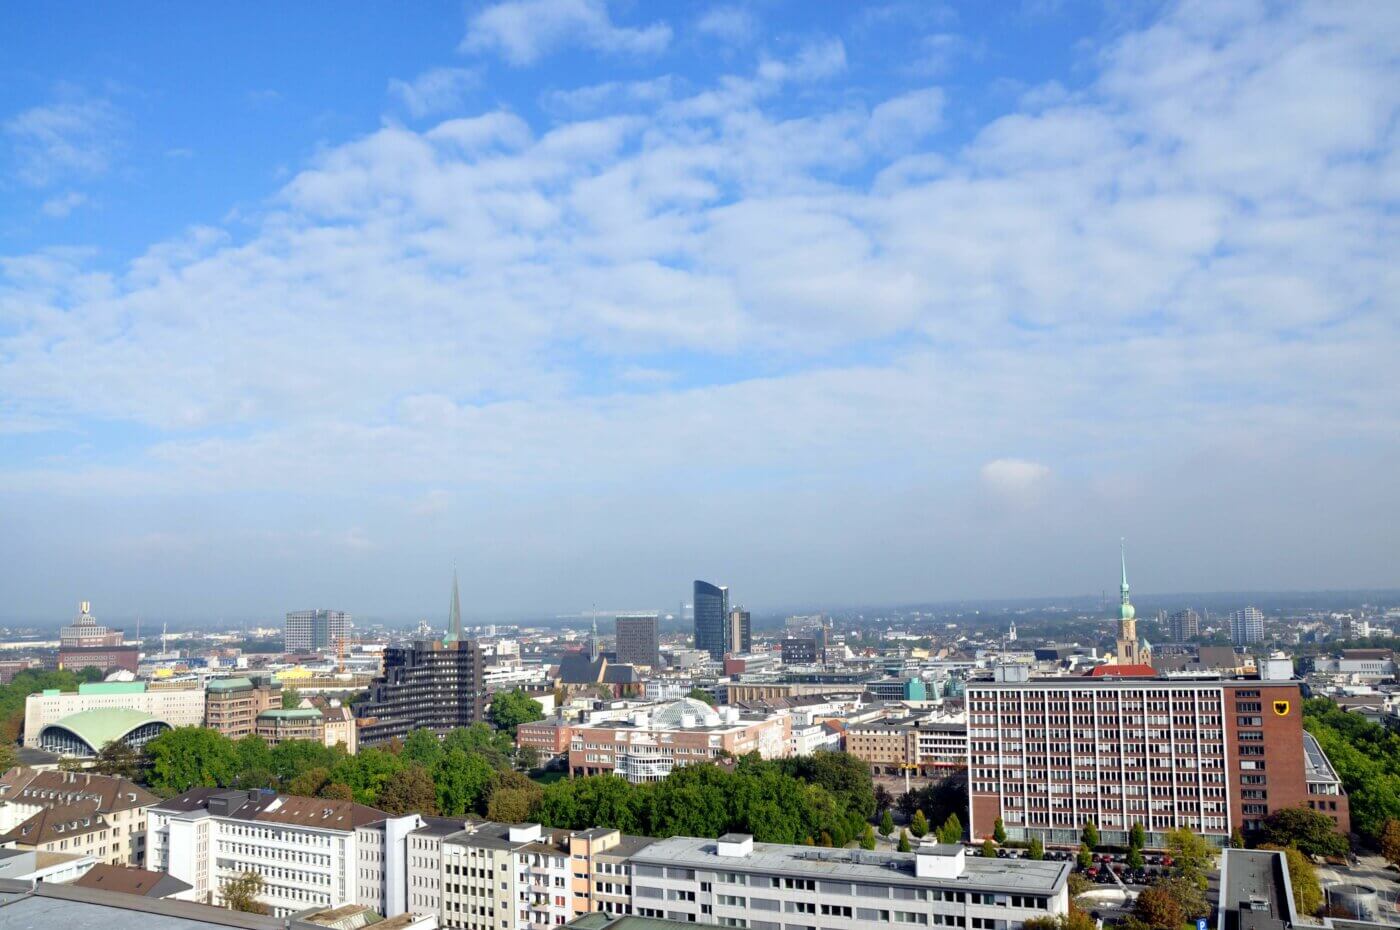 Ein Panoramablick von oben auf die Stadt Dortmund. In der Mitte sieht man ein Hochhaus und weiter rechts einen Kirchturm.